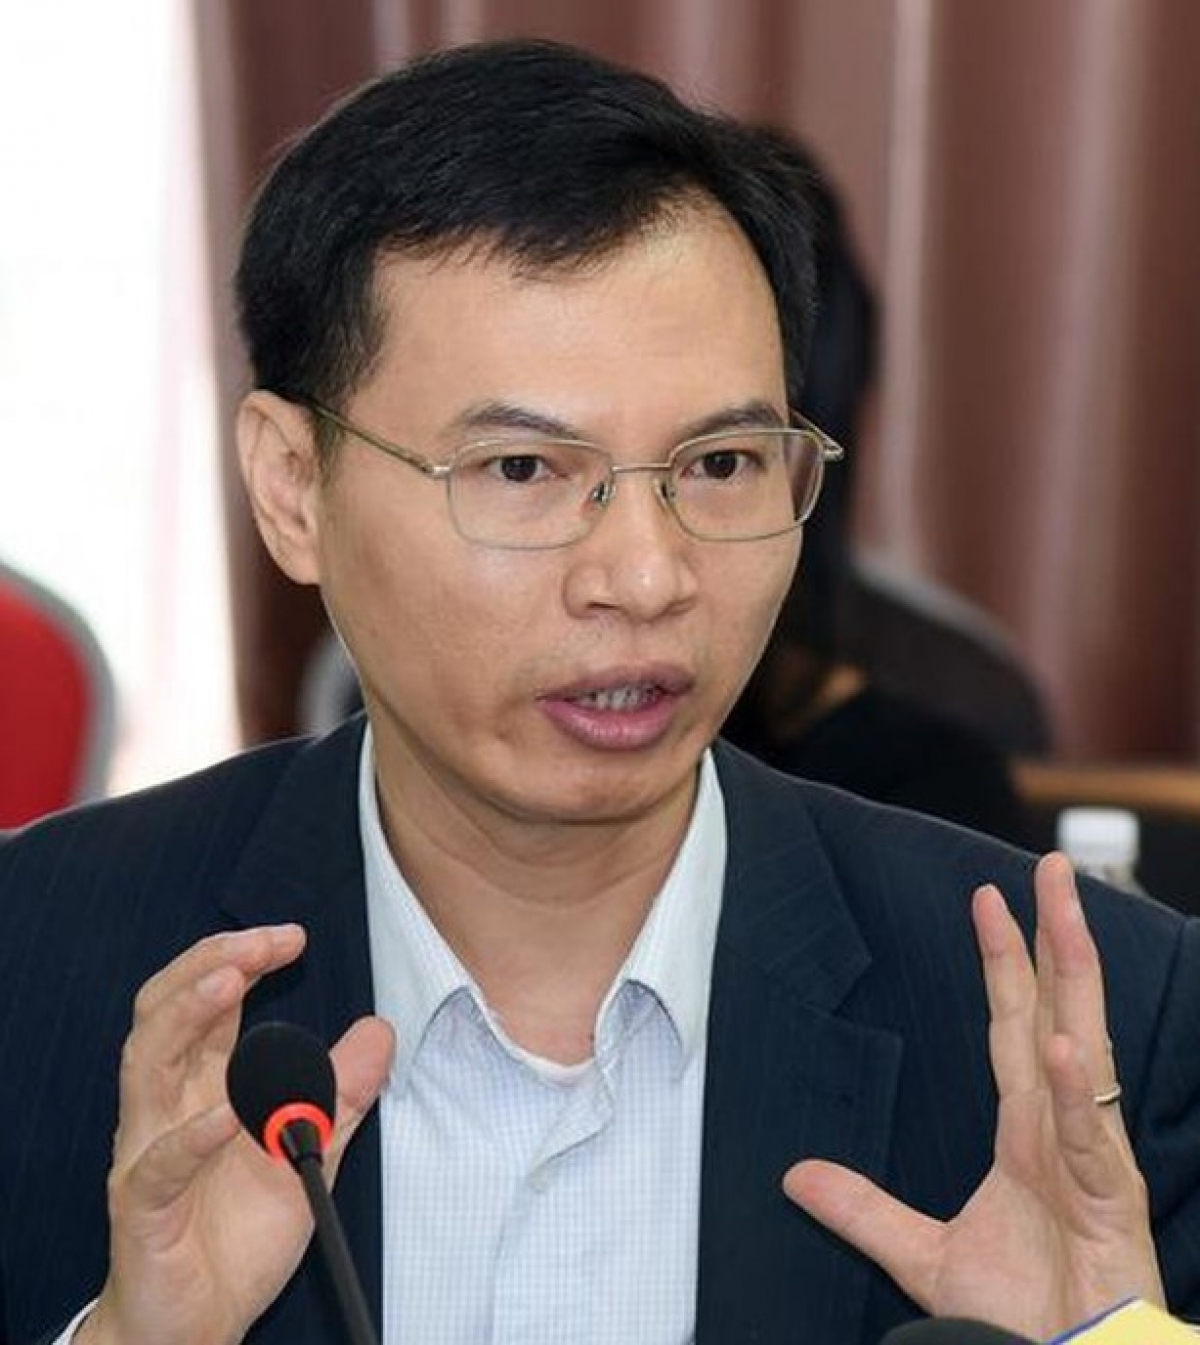 Ông Trần Hữu Minh, Phó Chánh Văn phòng Ủy ban an toàn giao thông Quốc gia: "Nghị định 100 đã tác động sâu sắc đến ý thức của người tham gia giao thông"